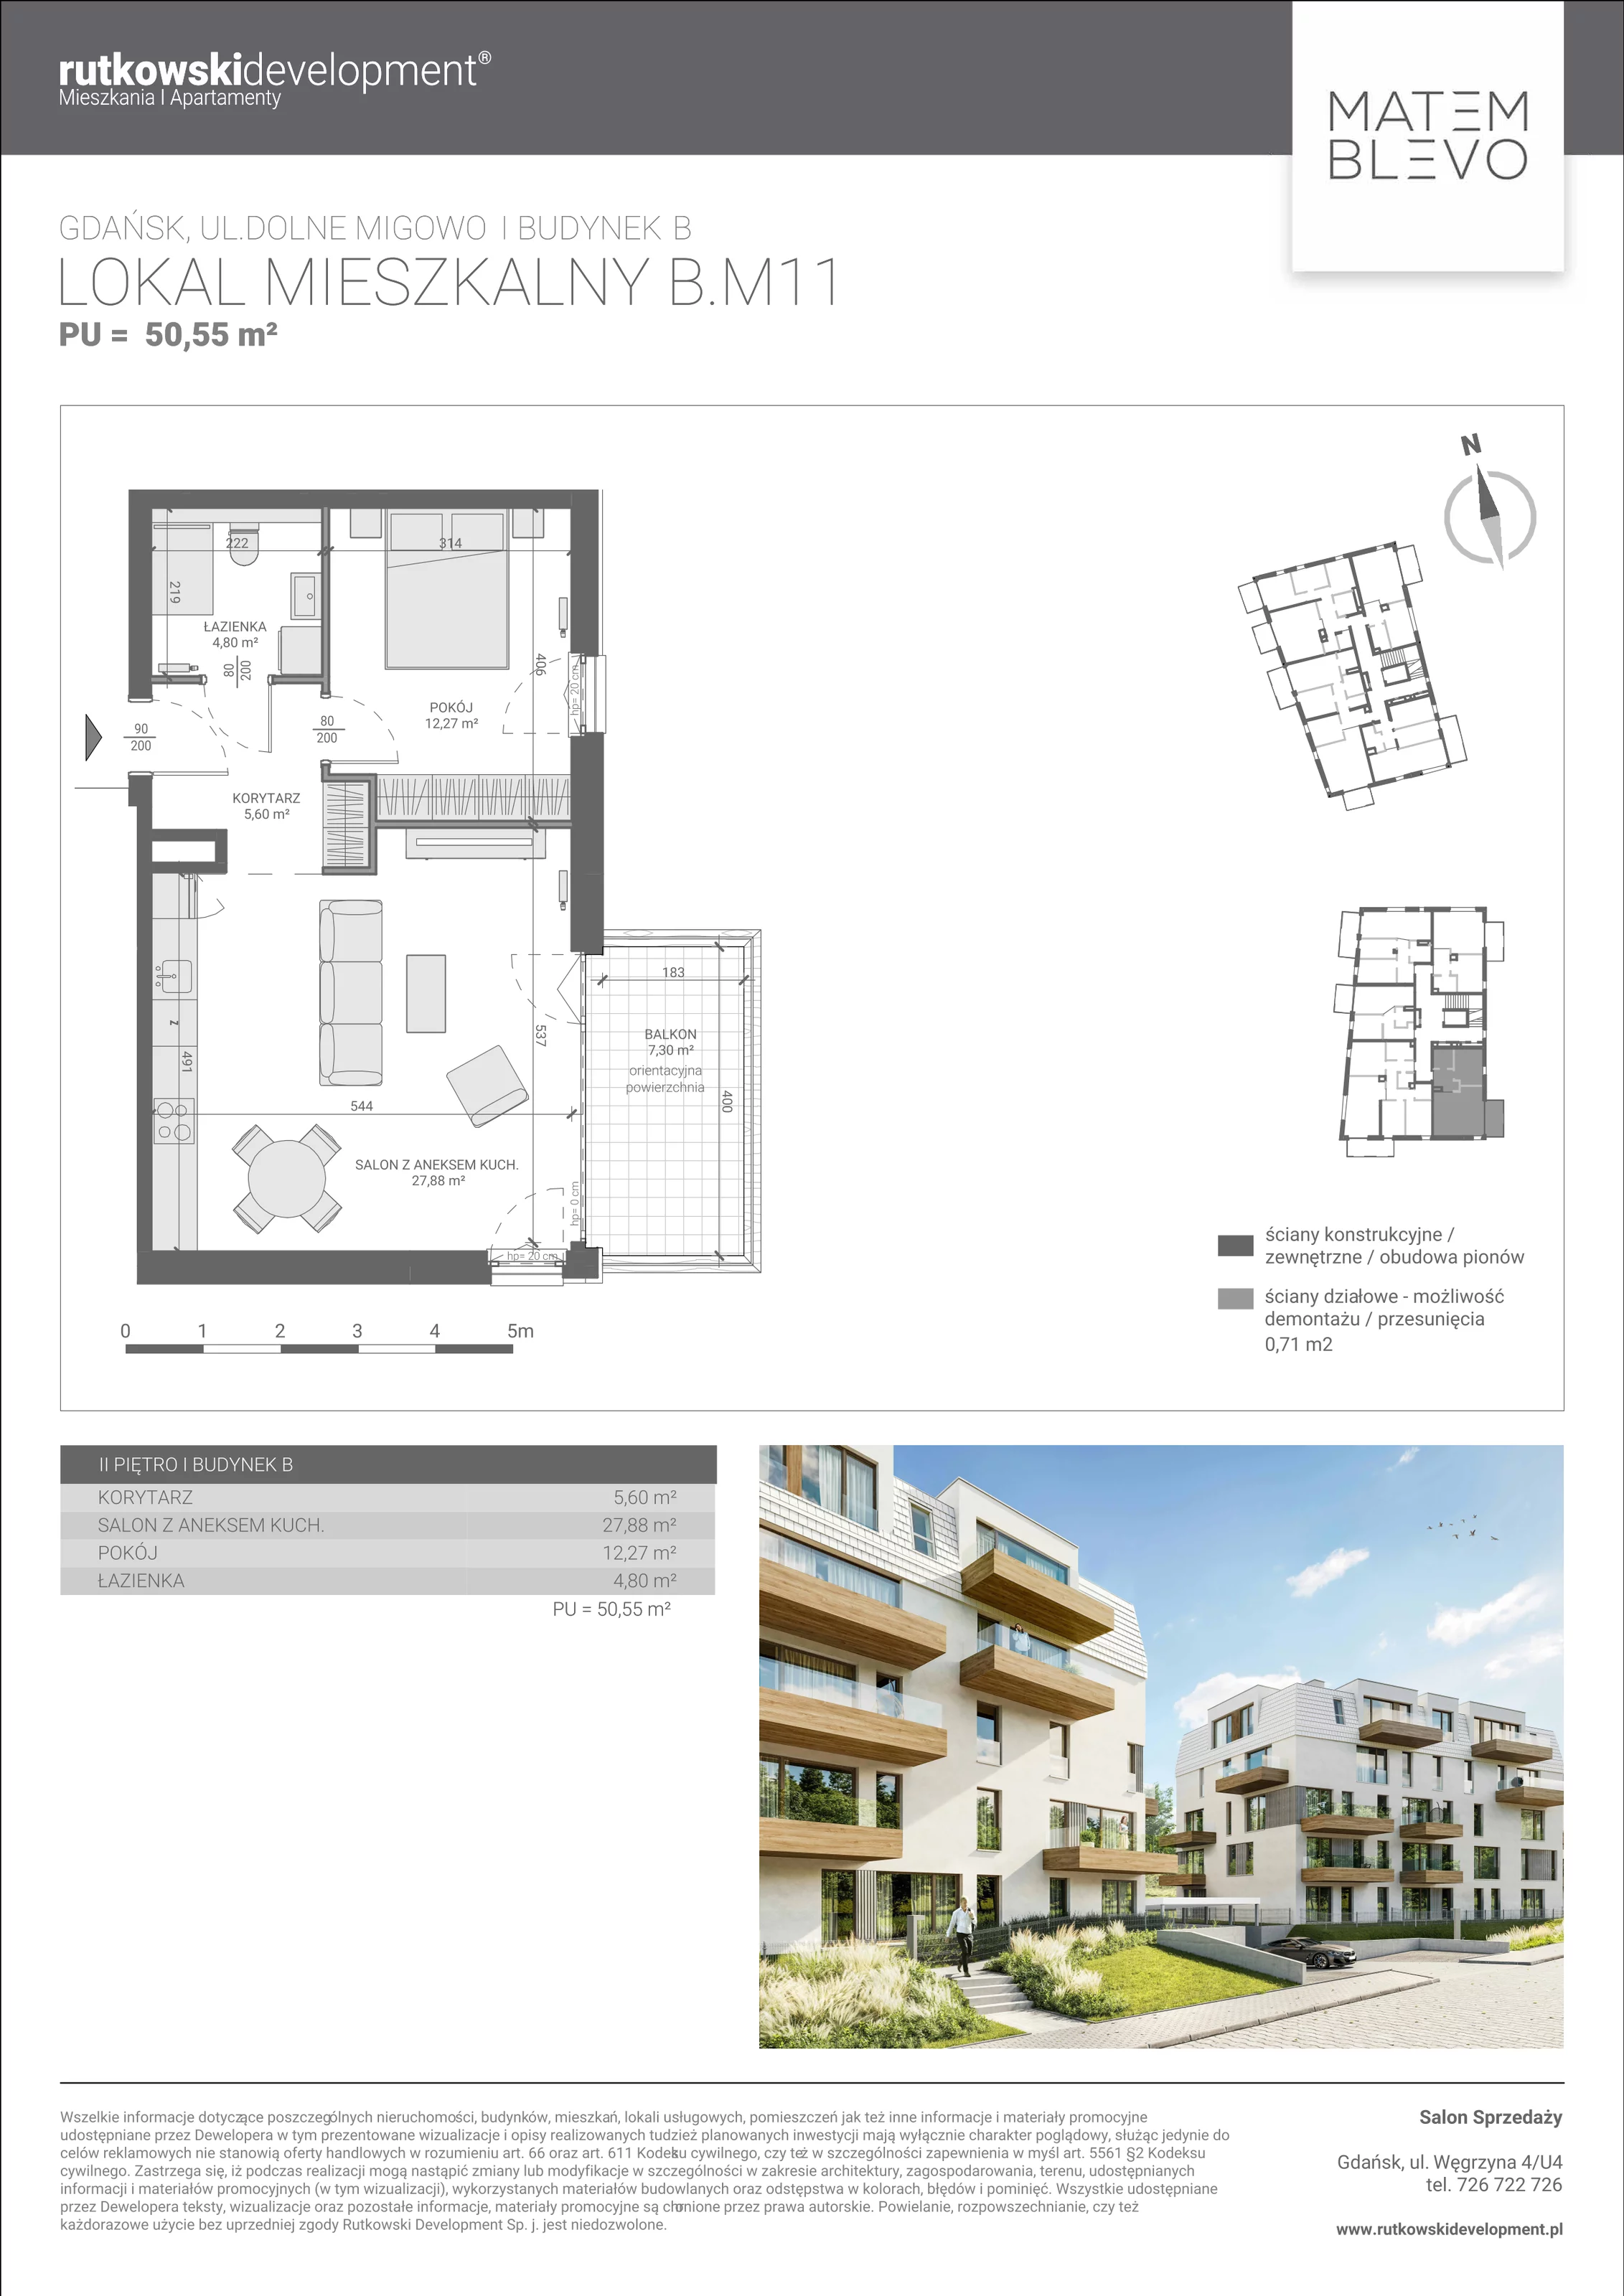 Mieszkanie 50,55 m², piętro 2, oferta nr B.M11, Matemblevo, Gdańsk, Brętowo, ul. Dolne Migowo 23 D